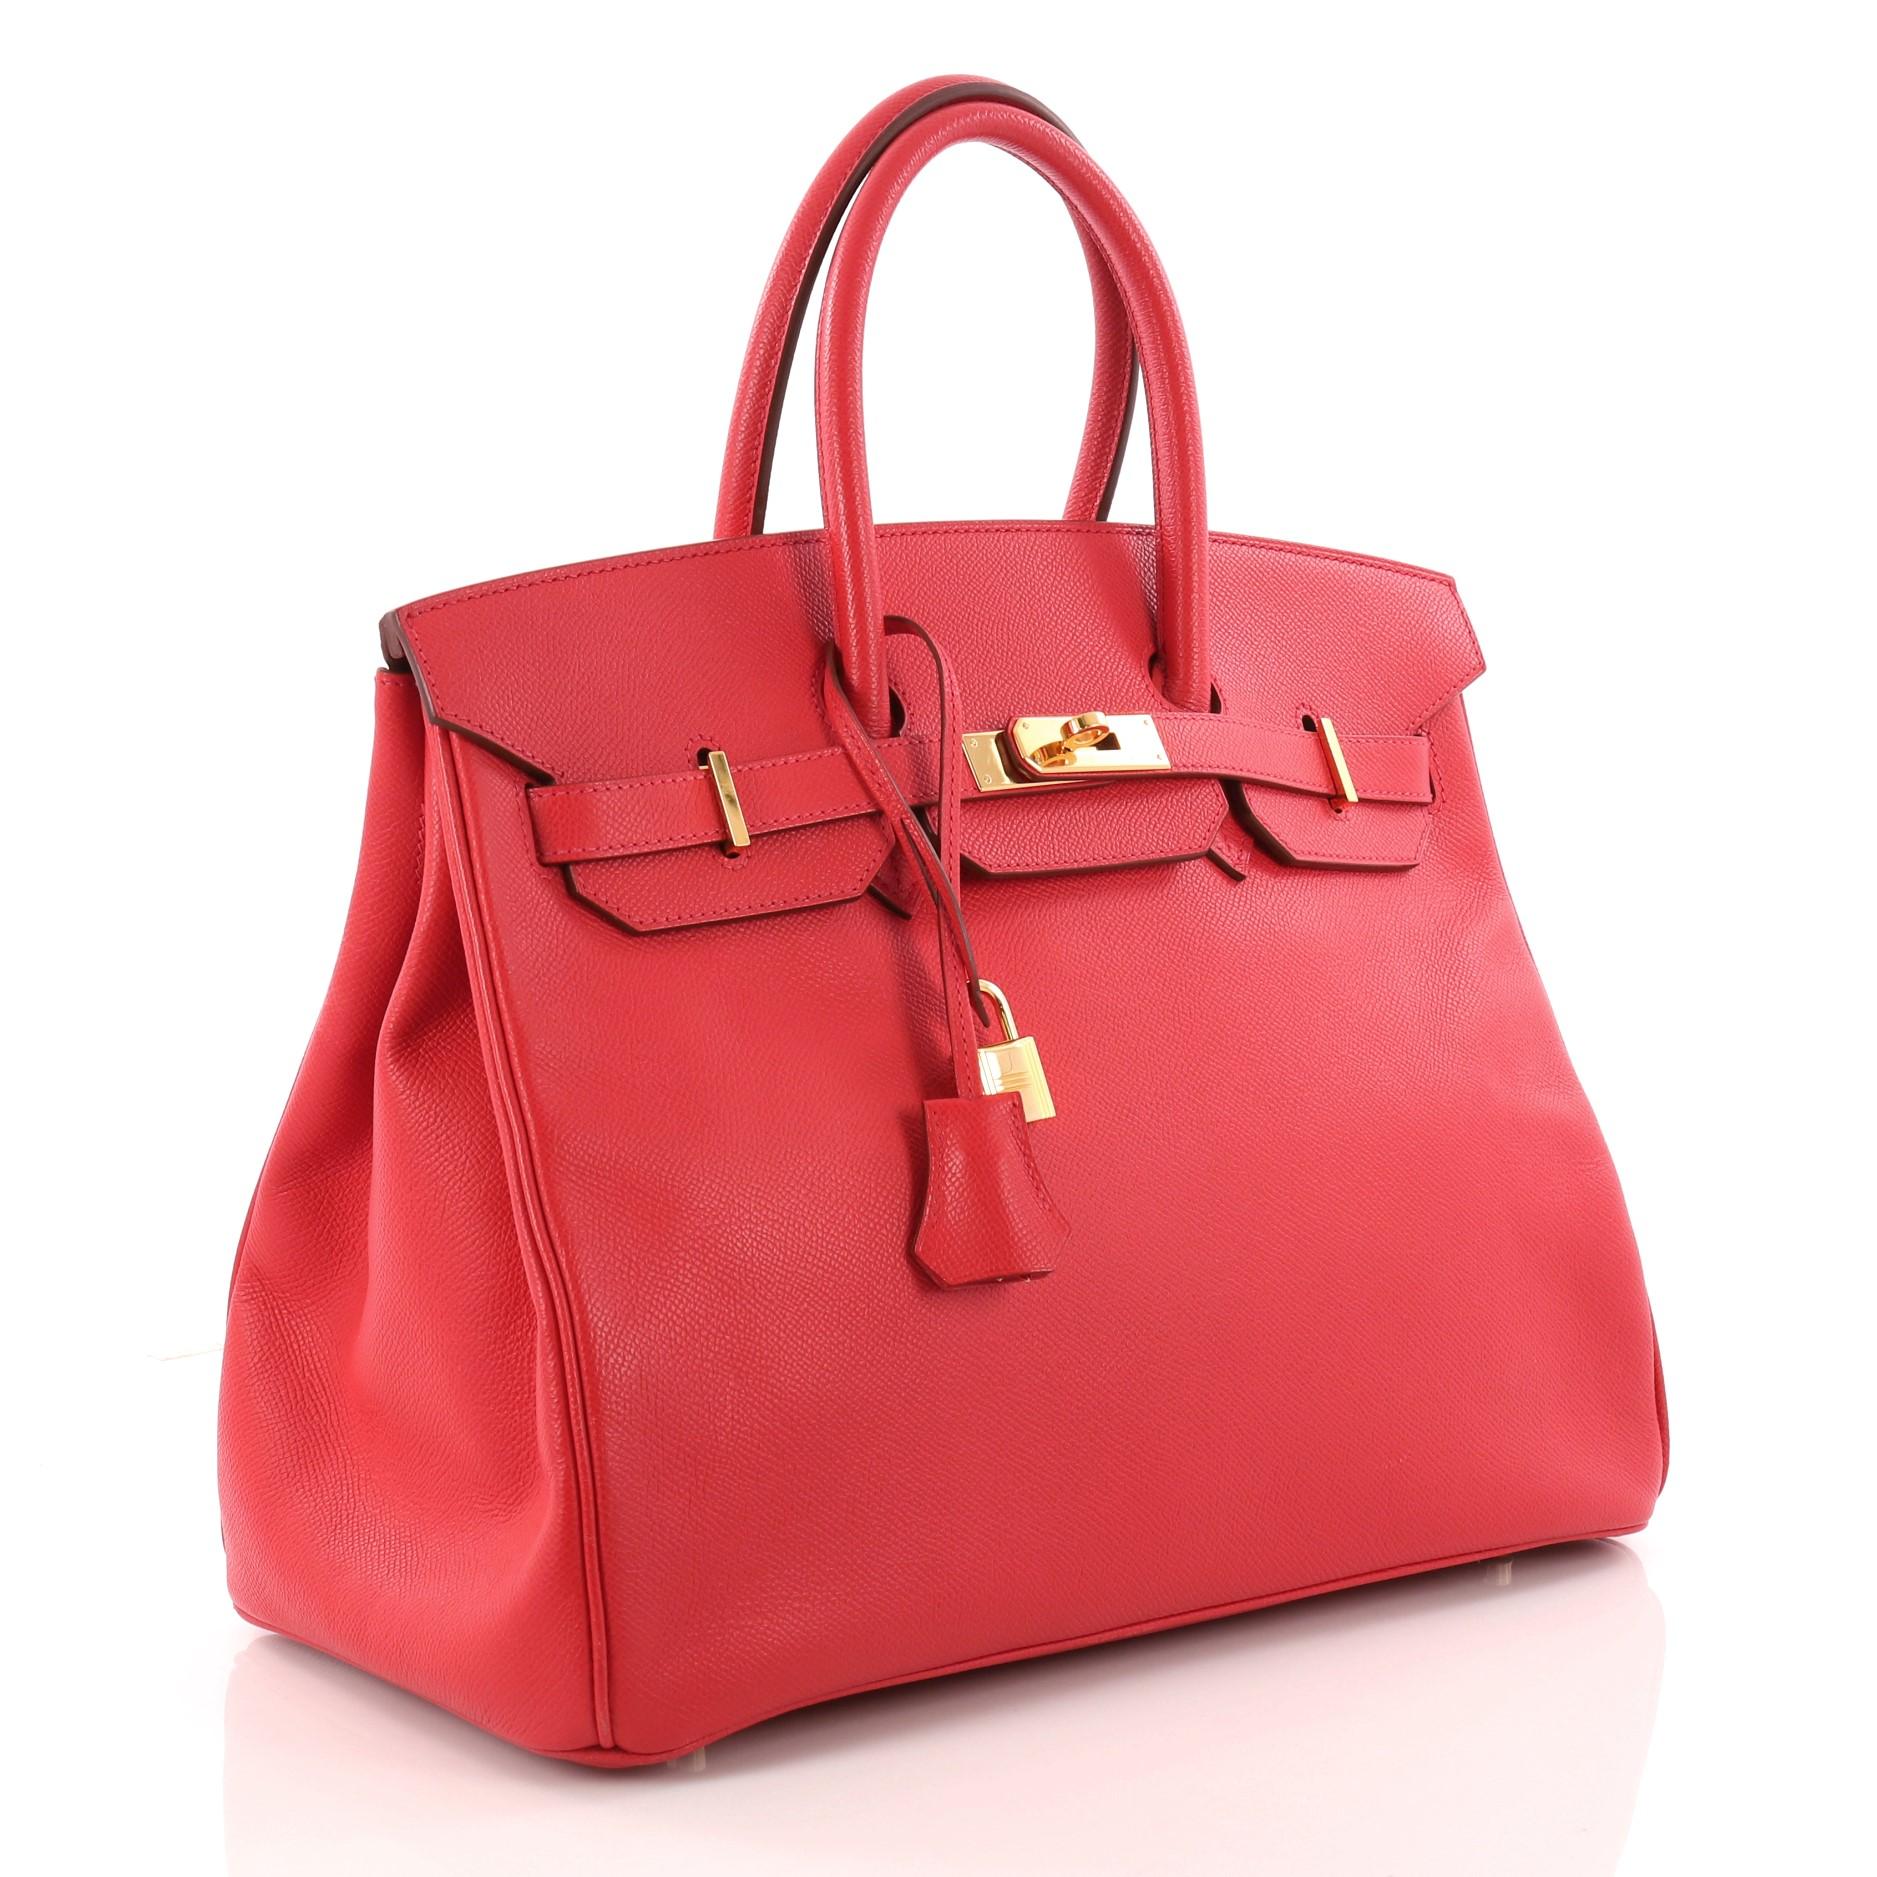 Red Hermes Birkin Handbag Rouge Vif Epsom with Gold Hardware 35